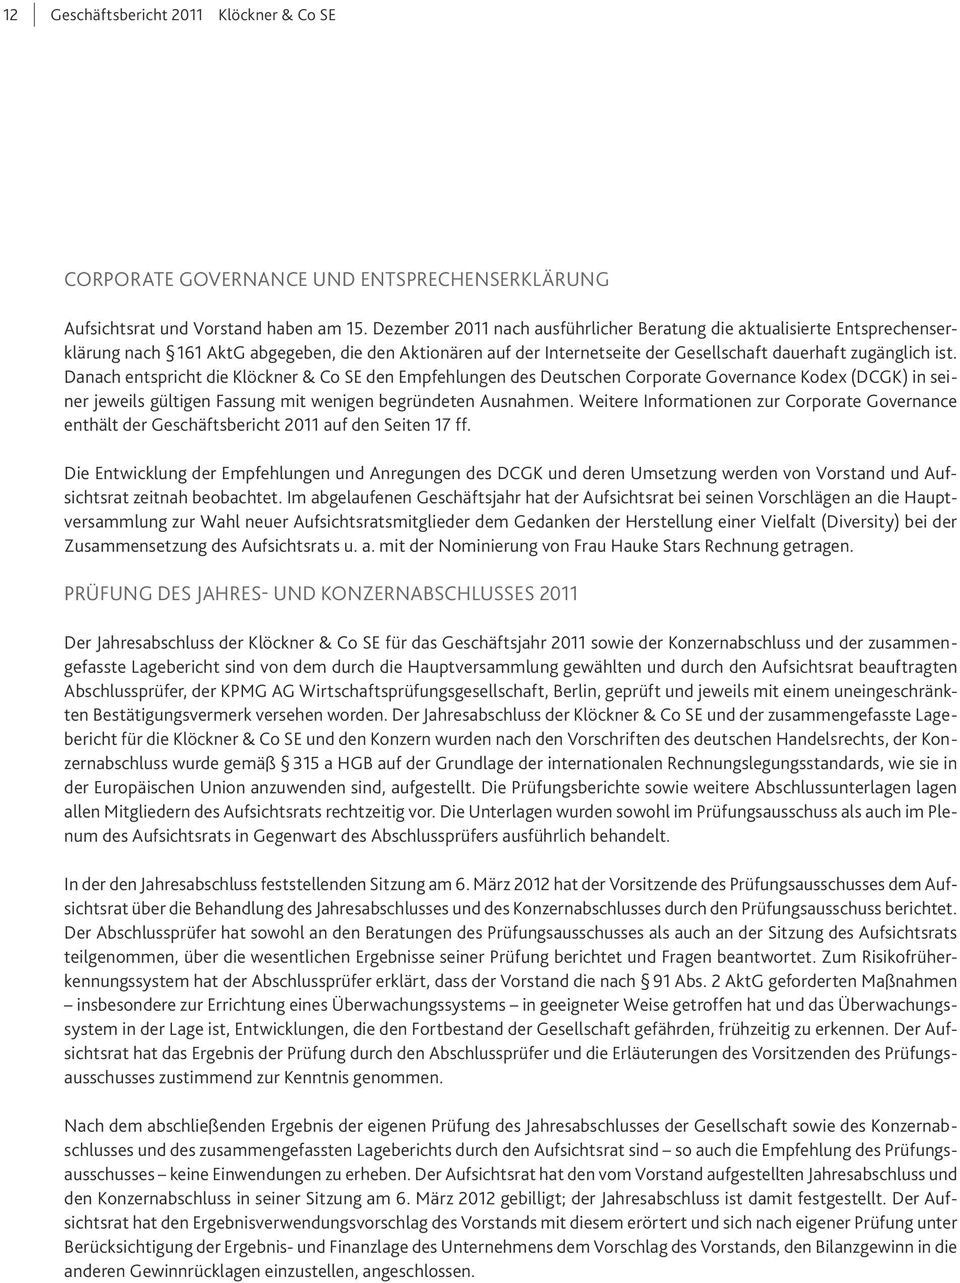 Danach entspricht die Klöckner & Co SE den Empfehlungen des Deutschen Corporate Governance Kodex (DCGK) in seiner jeweils gültigen Fassung mit wenigen begründeten Ausnahmen.